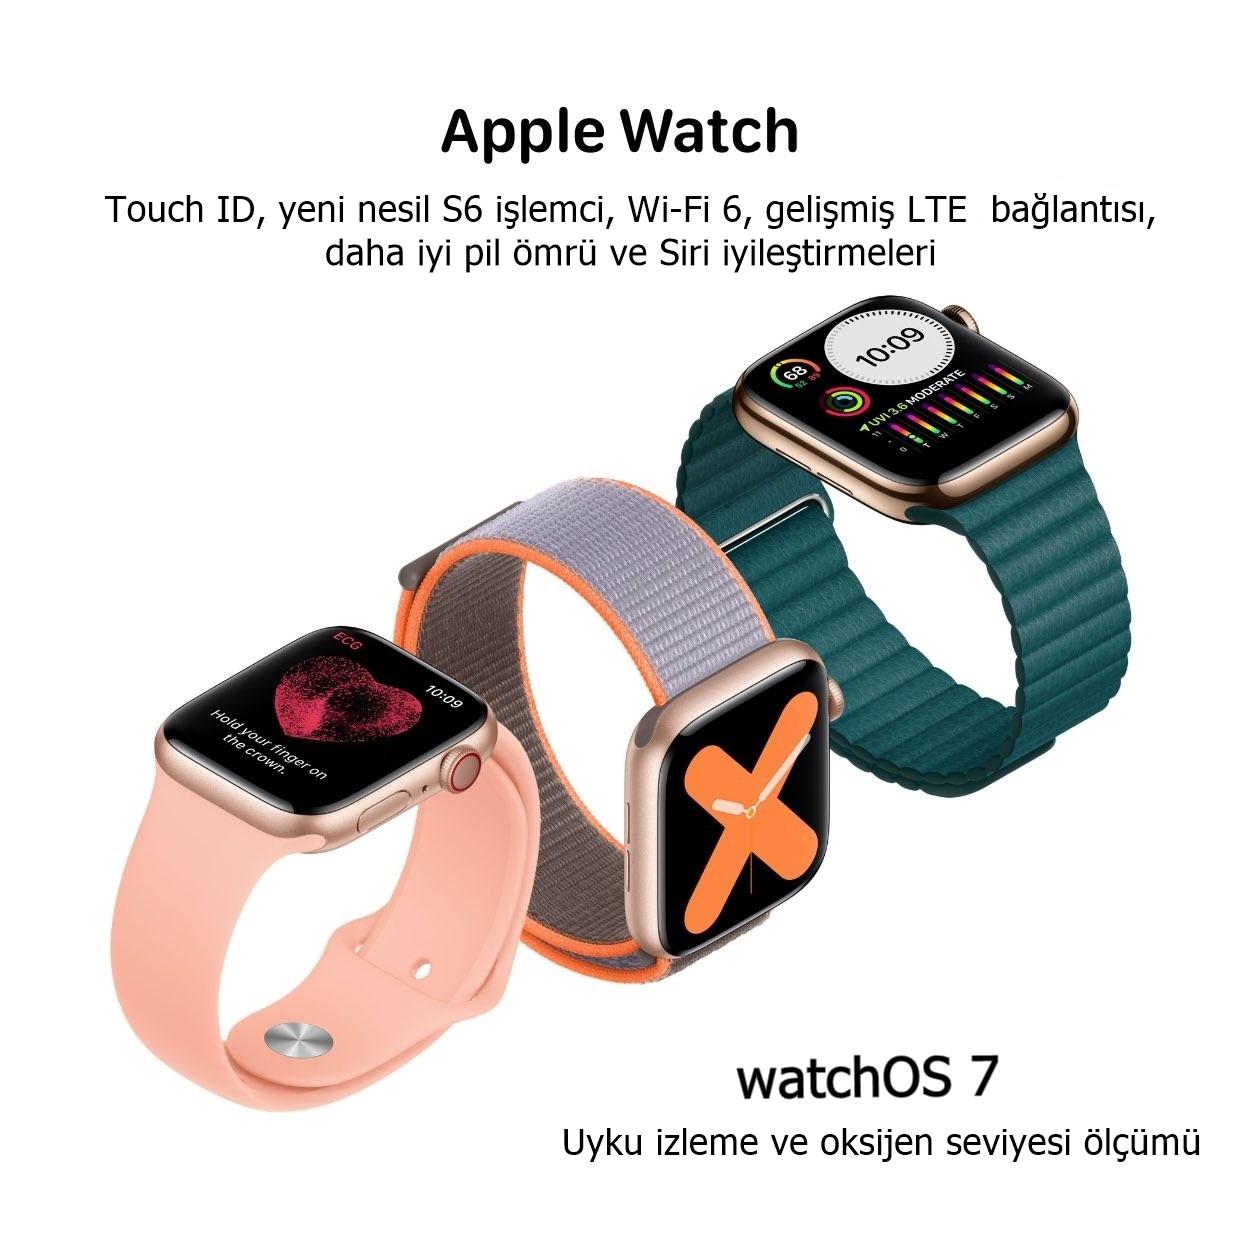 Yeni Apple Watch modelleri ve watchOS 7'ye dair önemli bilgiler paylaşıldı 